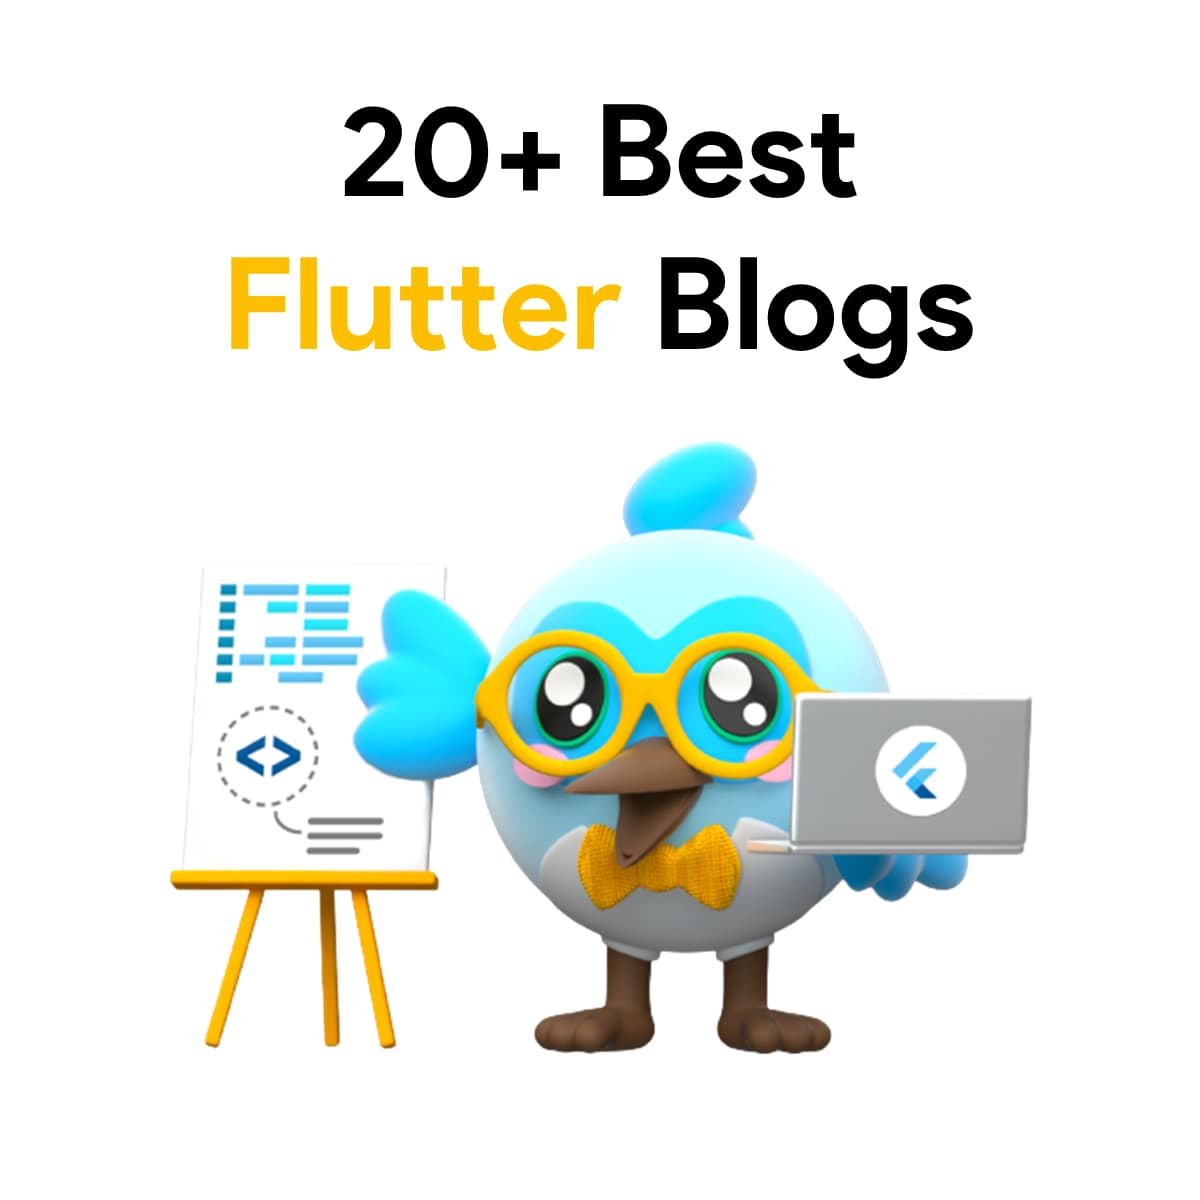 Best Flutter Blogs